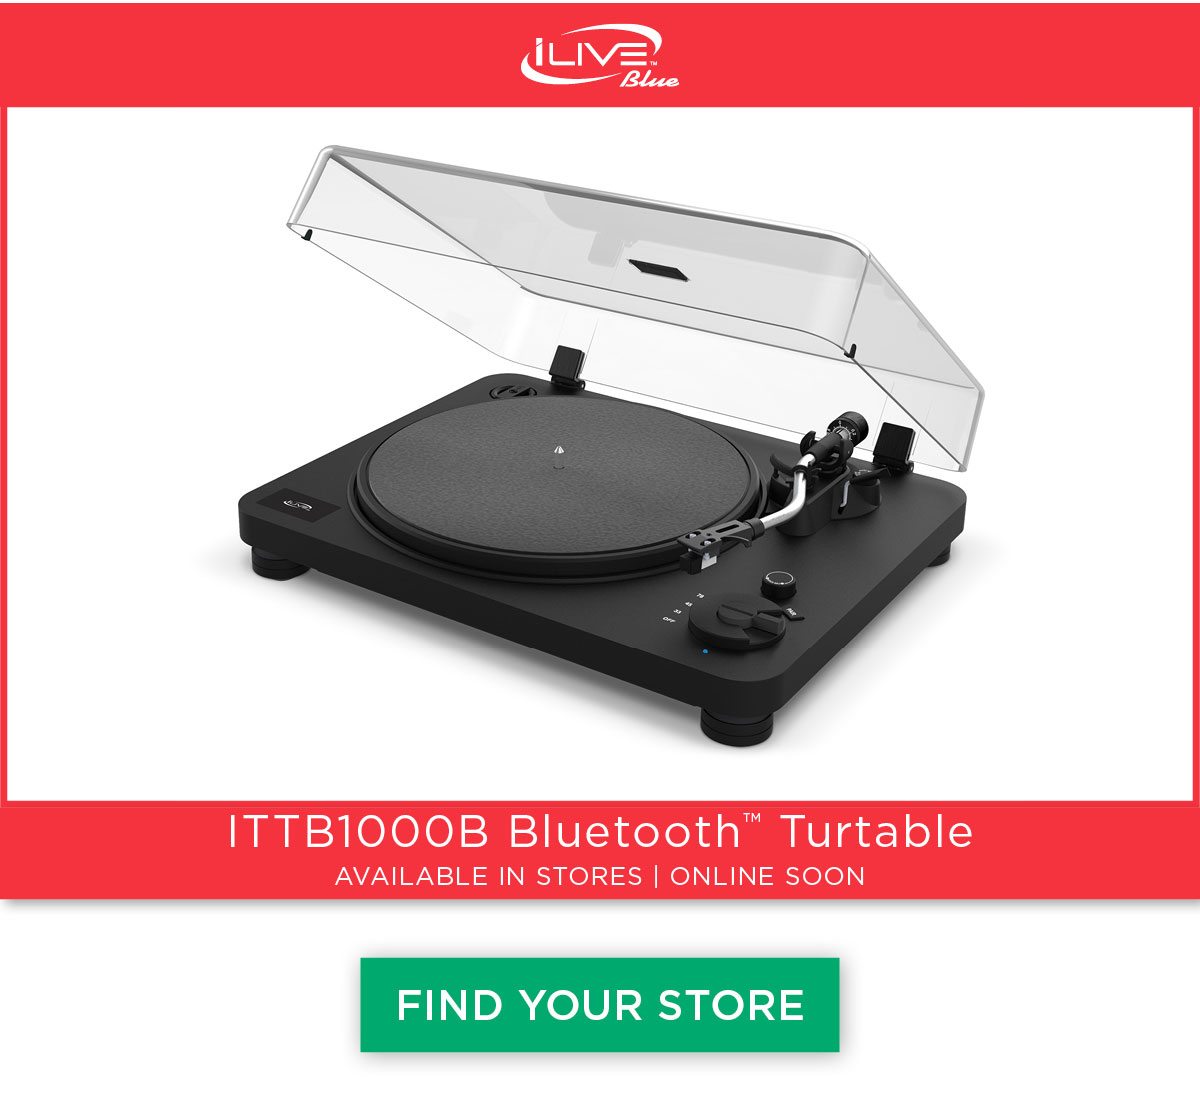 iLive - ITTB1000B Bluetooth Turntable